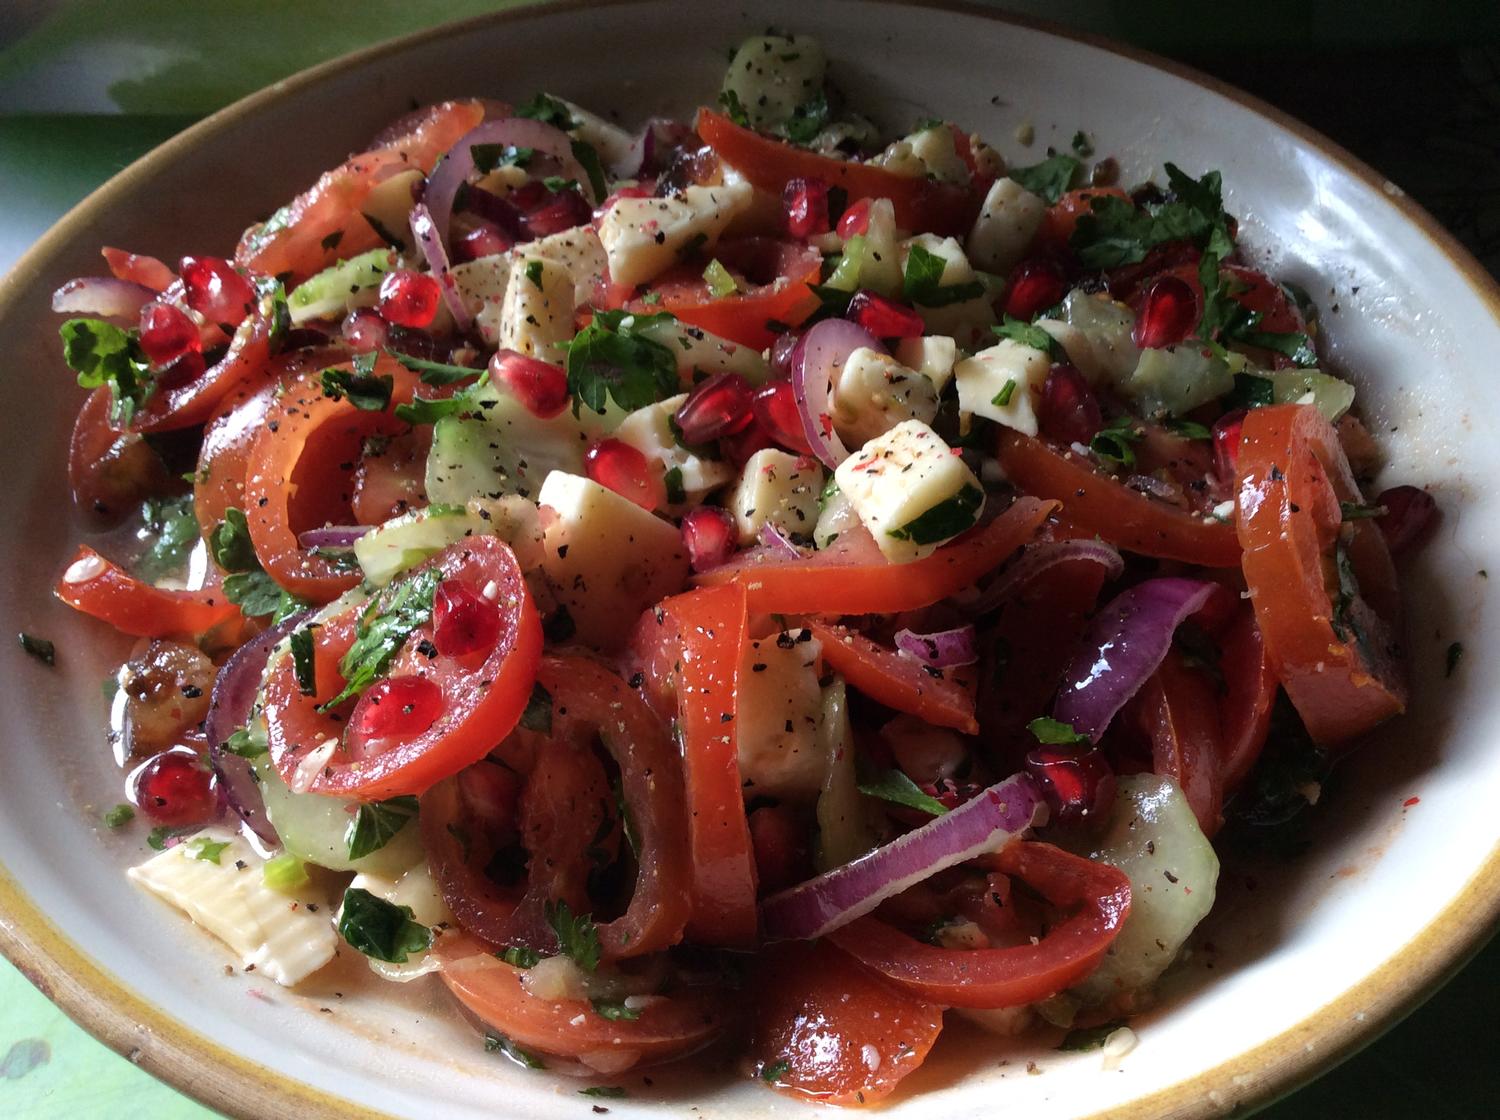 Arabischer Tomaten Gurkensalat — Rezepte Suchen